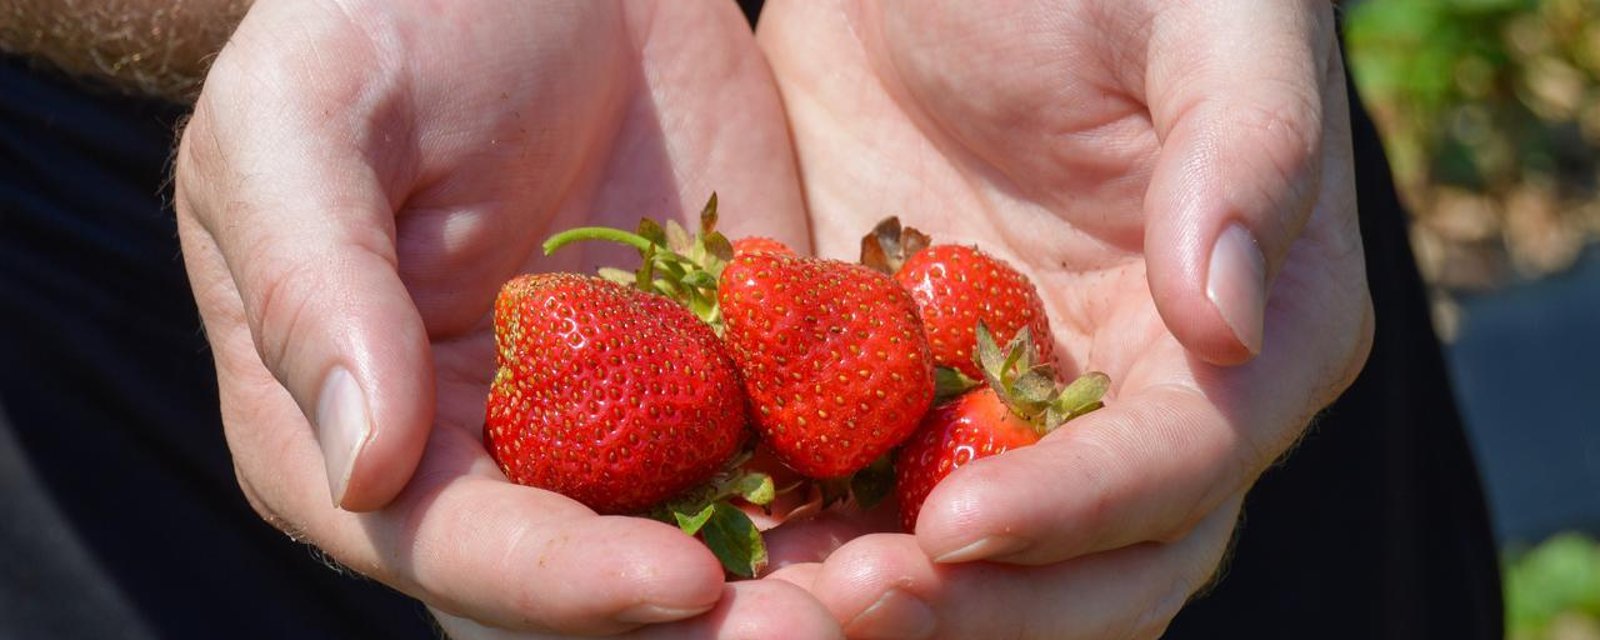 Les producteurs de fraises du Québec aux prises avec un grave problème